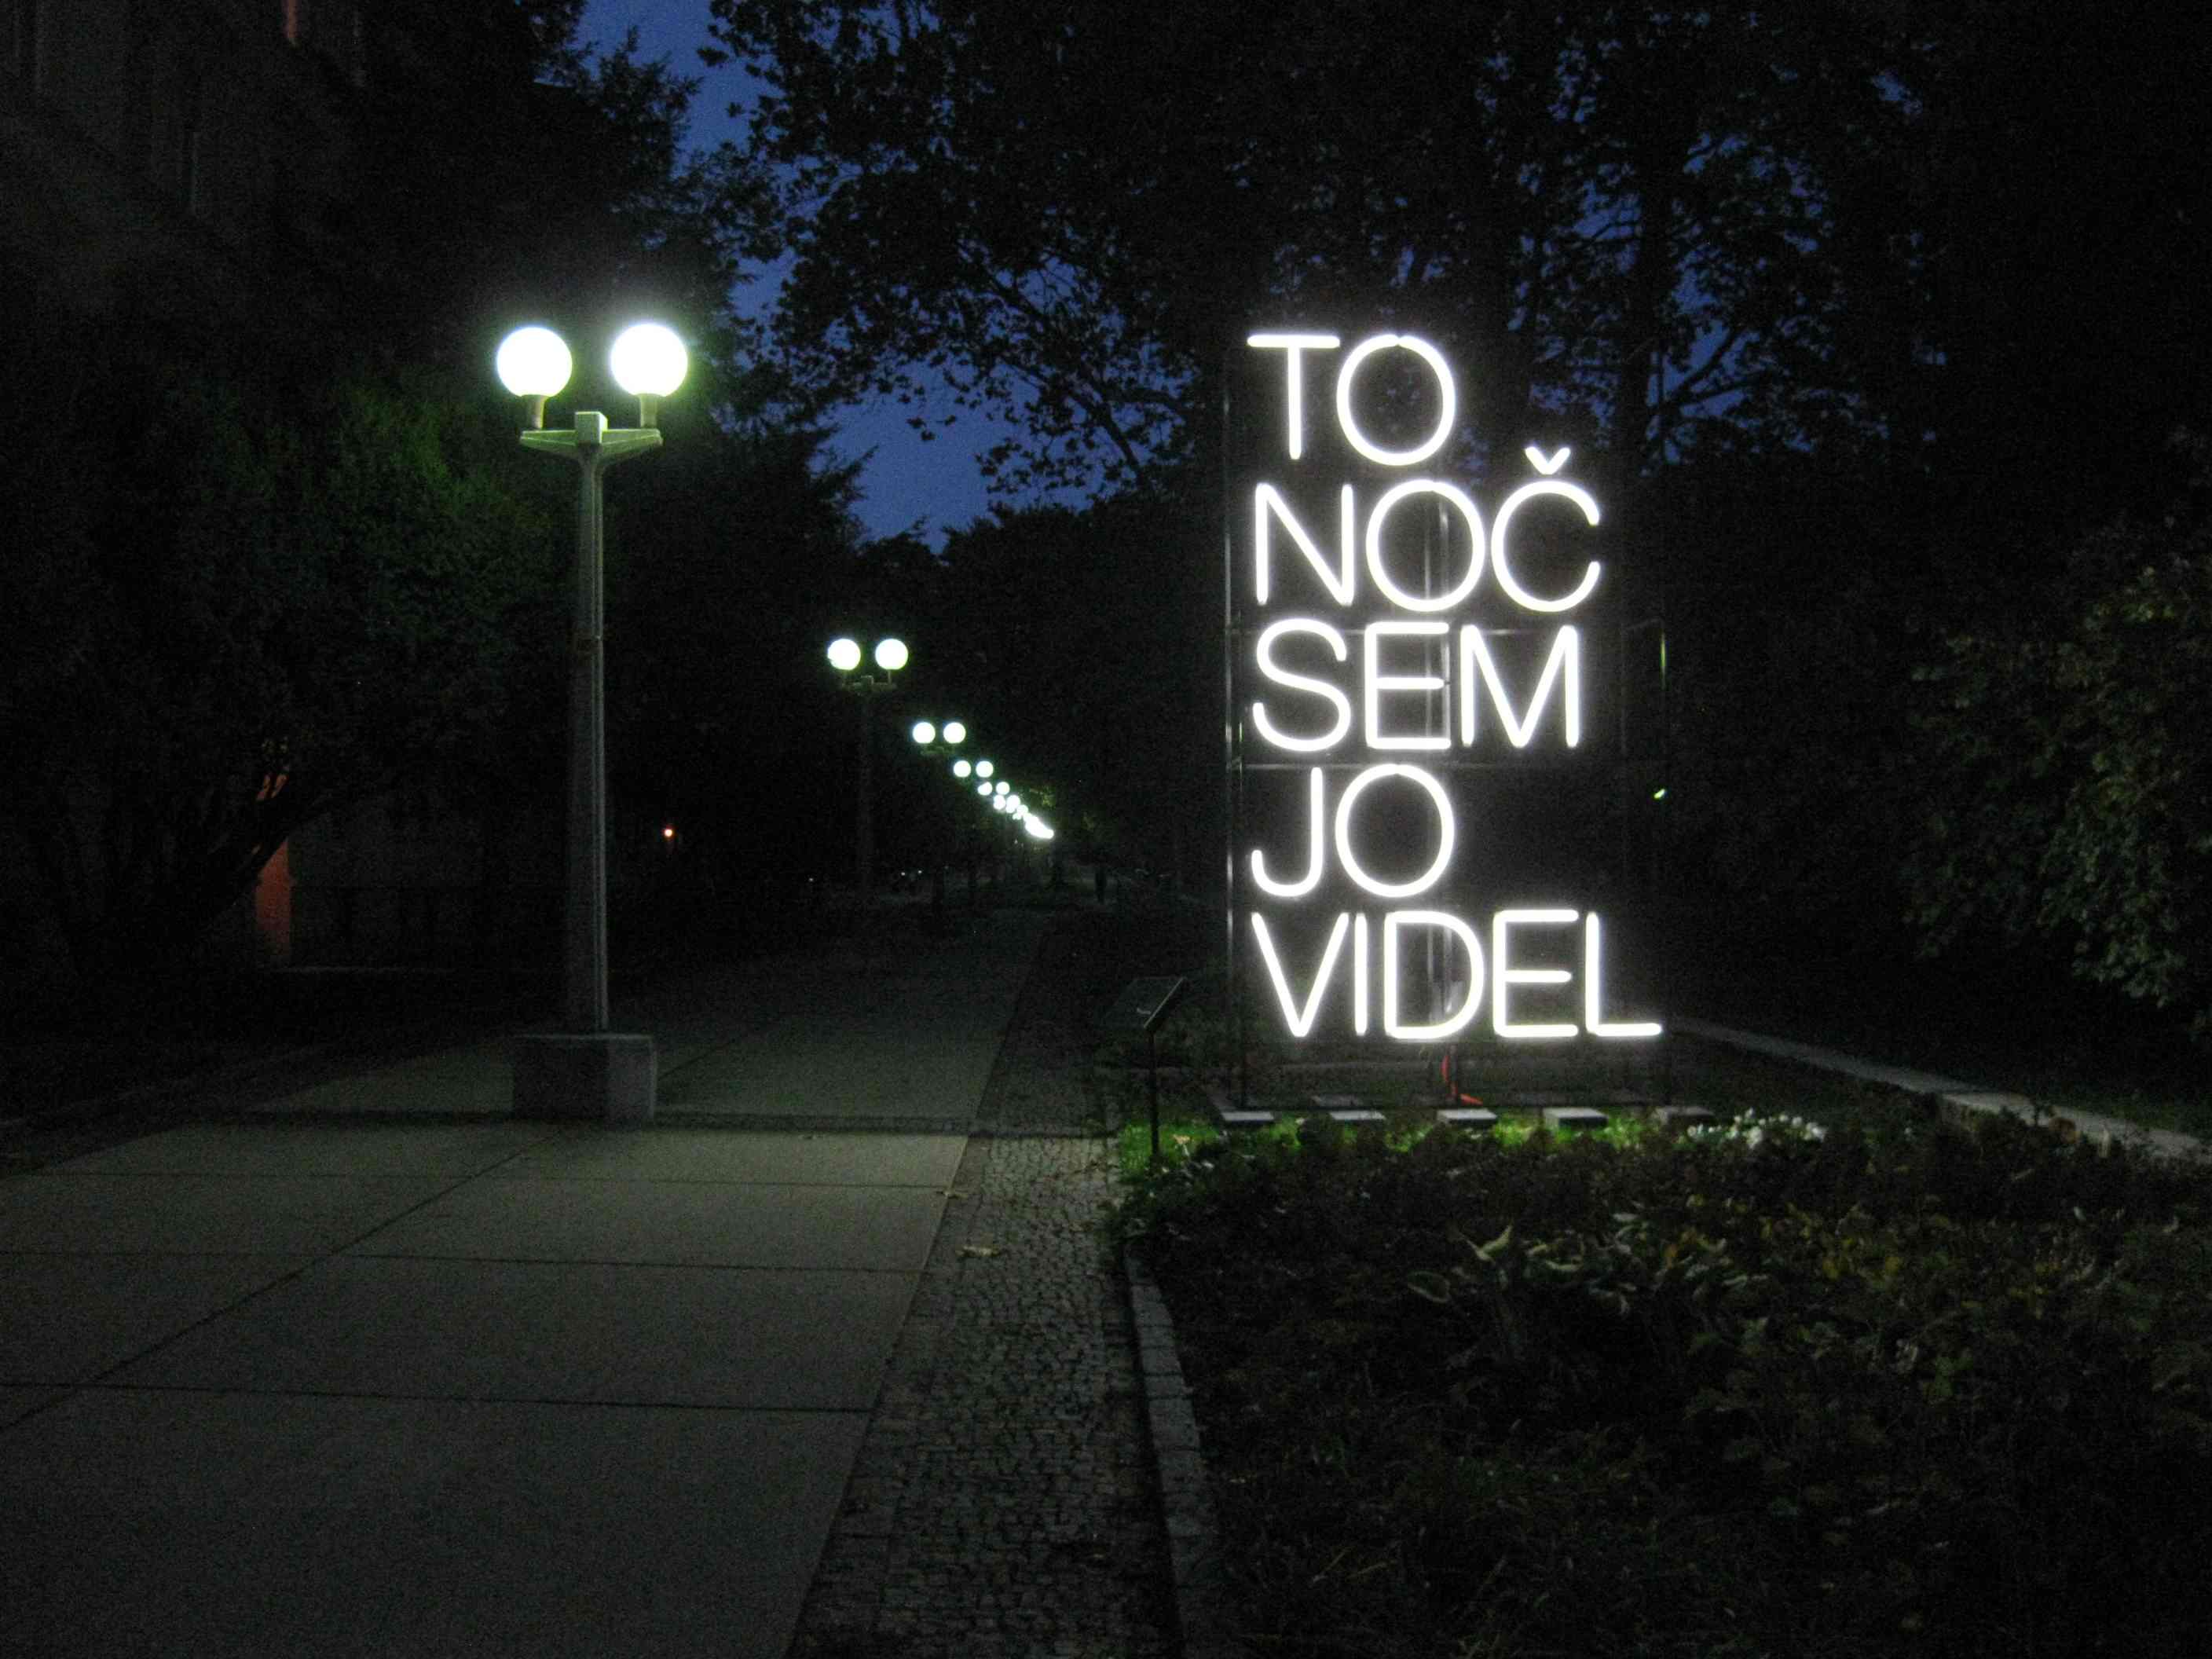 Art installation in Maribor: "To noč sem jo videl"